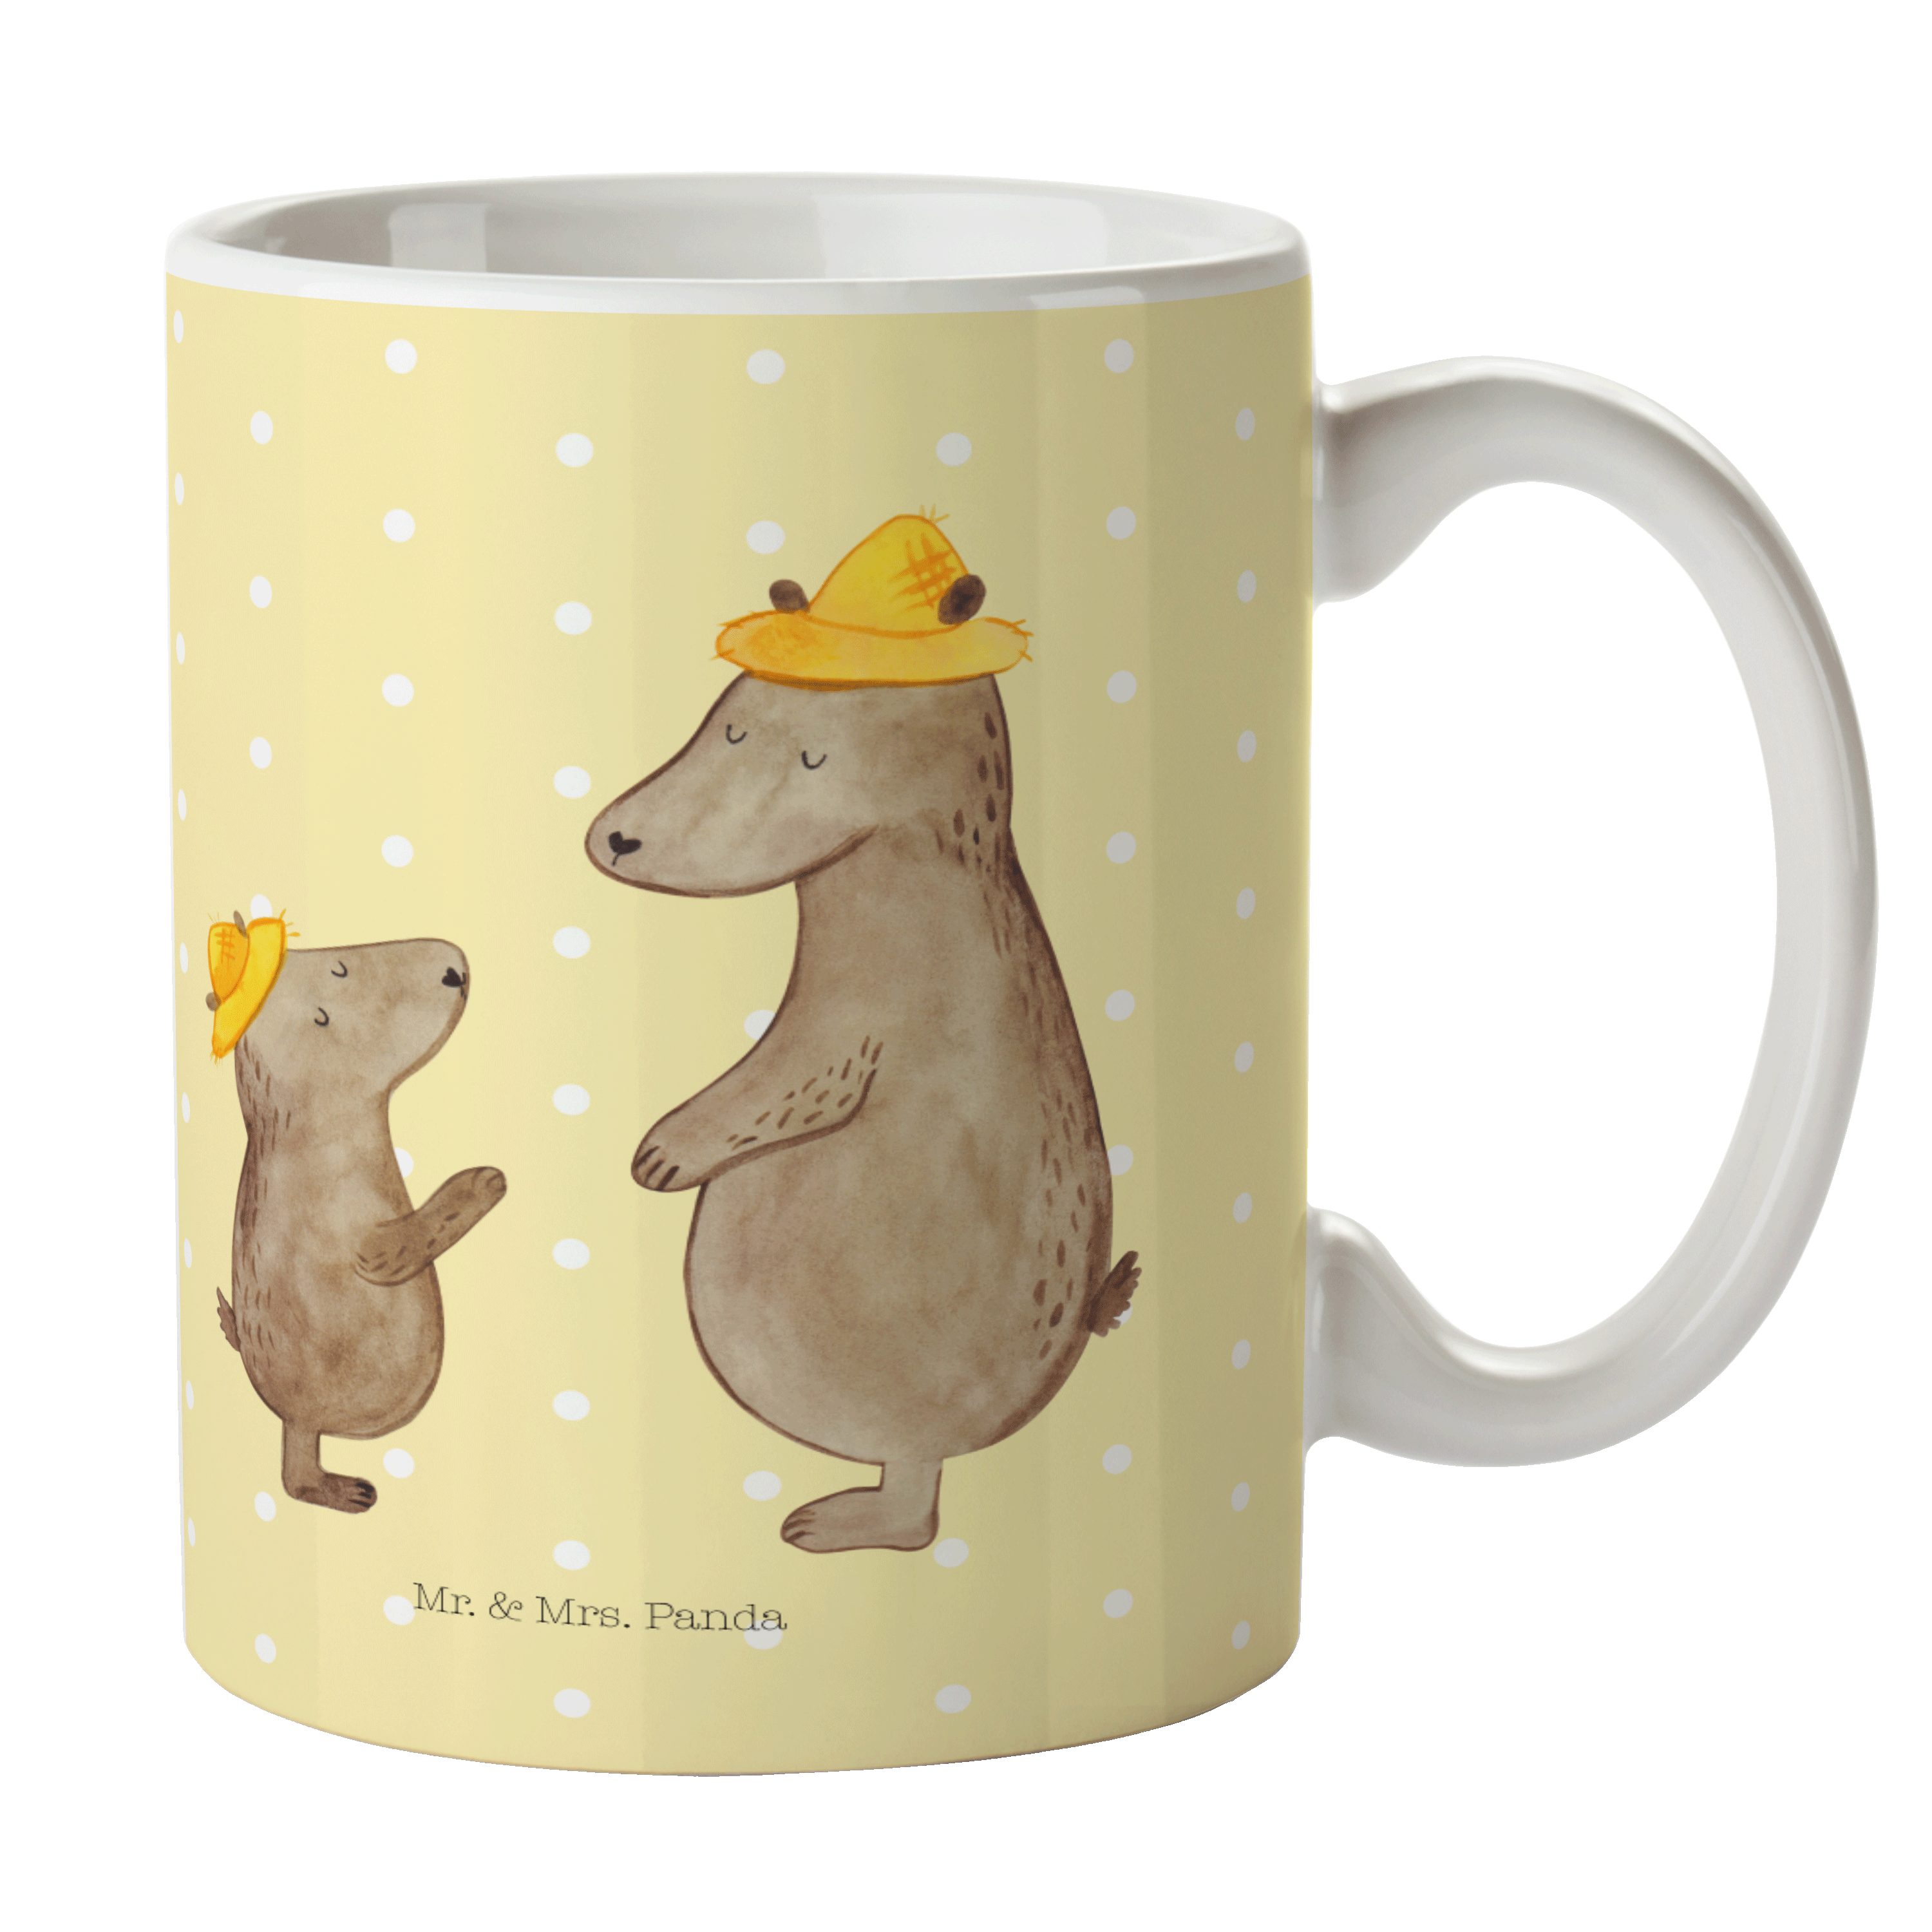 Mr. & Mrs. Panda Tasse Bären mit Hut - Gelb Pastell - Geschenk, Keramiktasse, Tasse Motive, Keramik